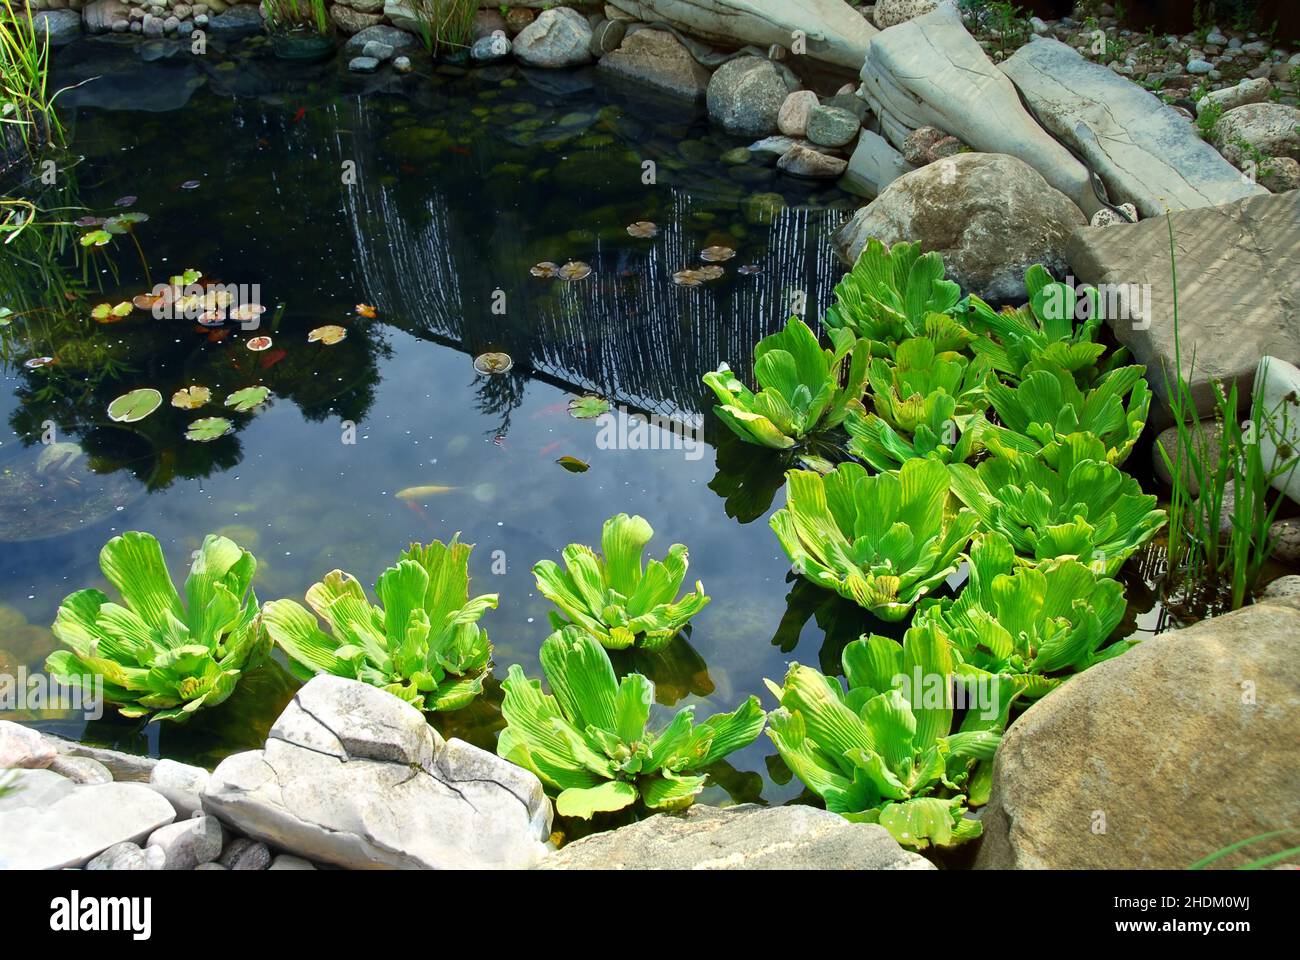 water plant, garden pond, water plants, garden ponds Stock Photo